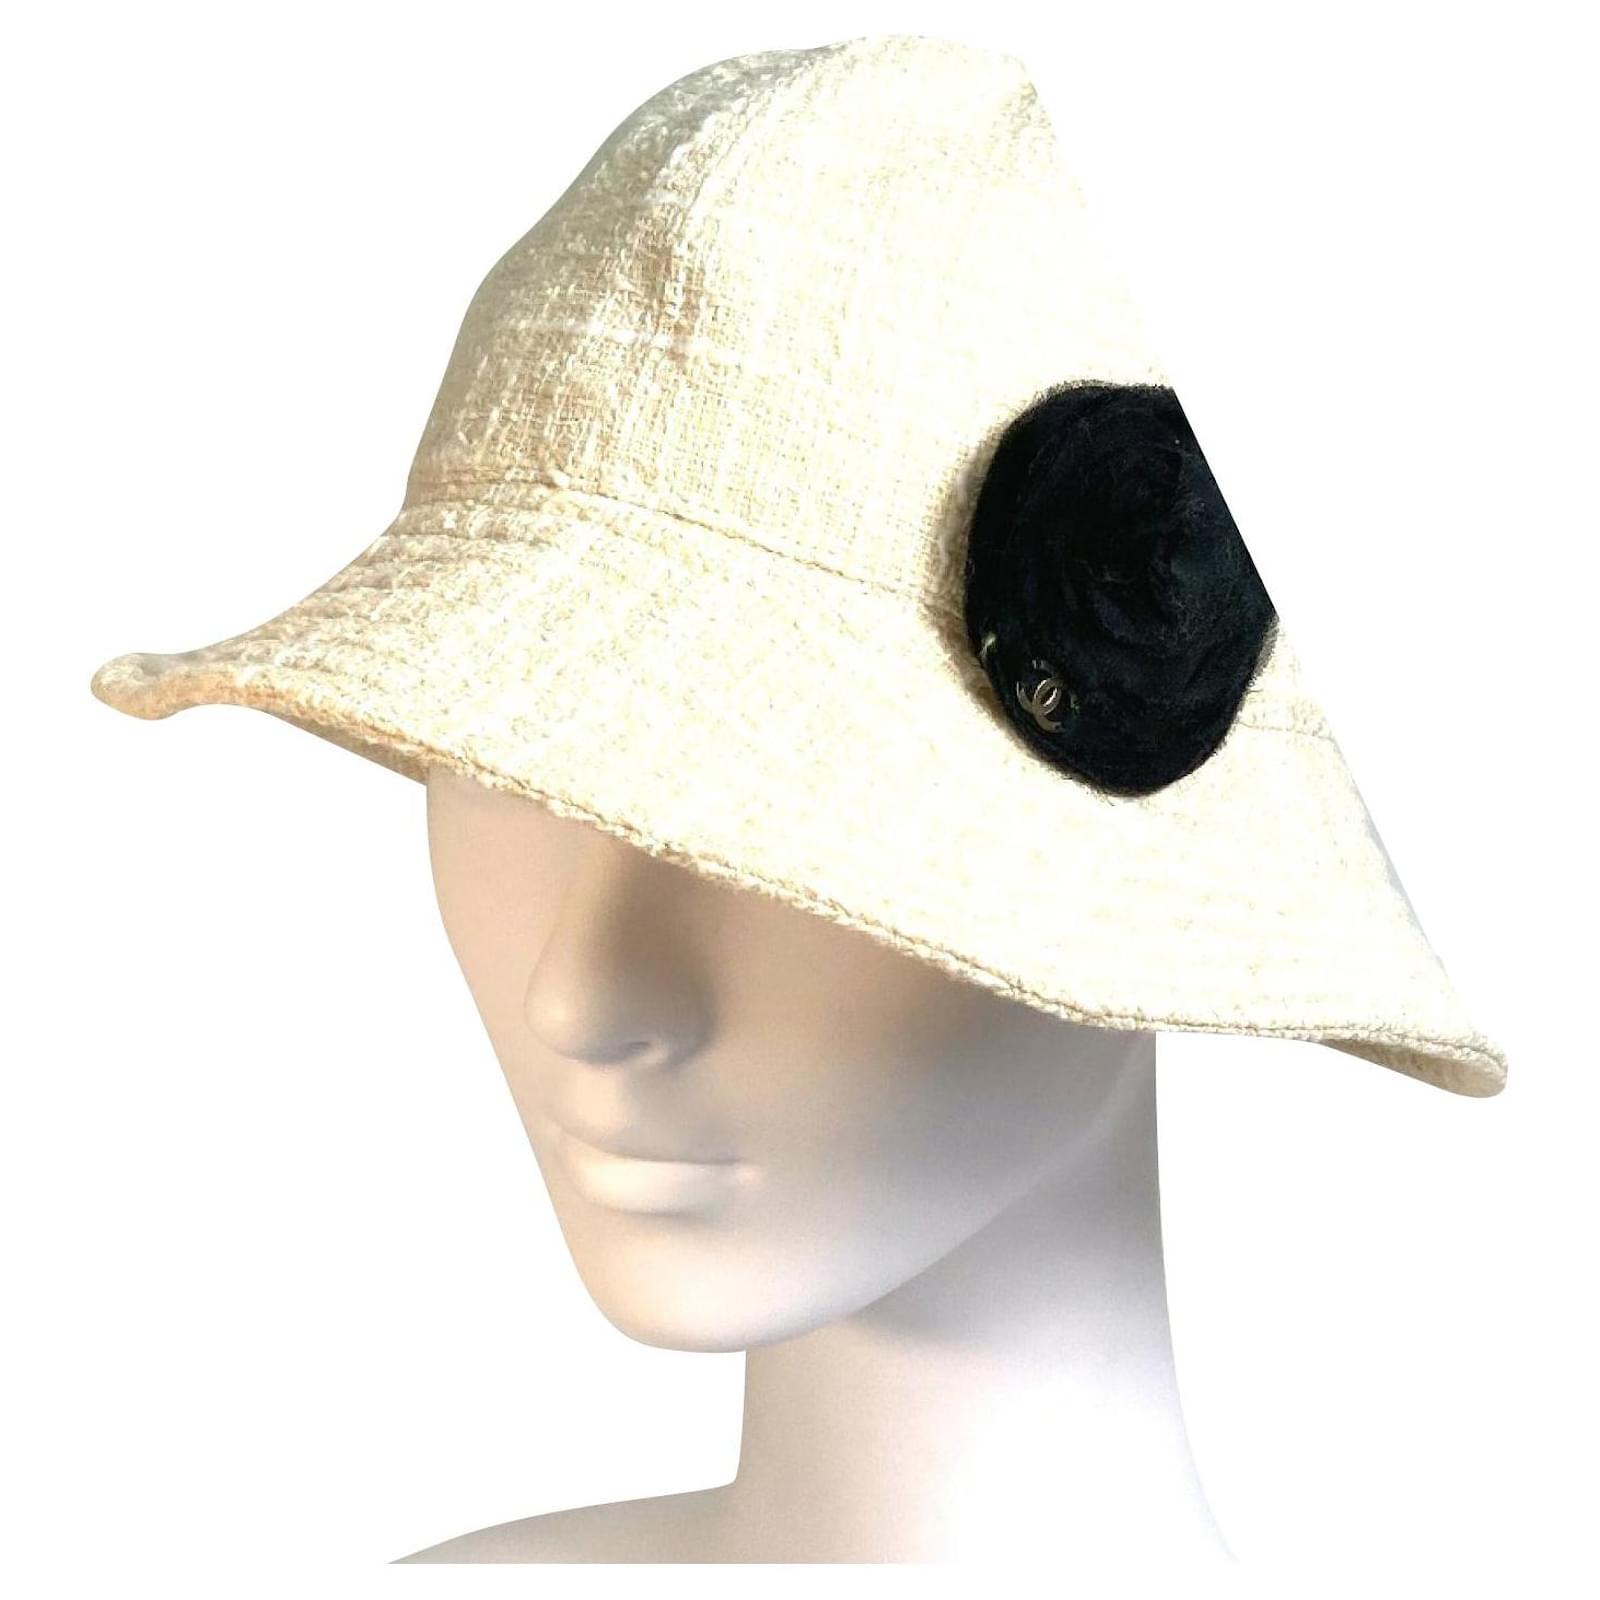 Chanel CC Straw Hat